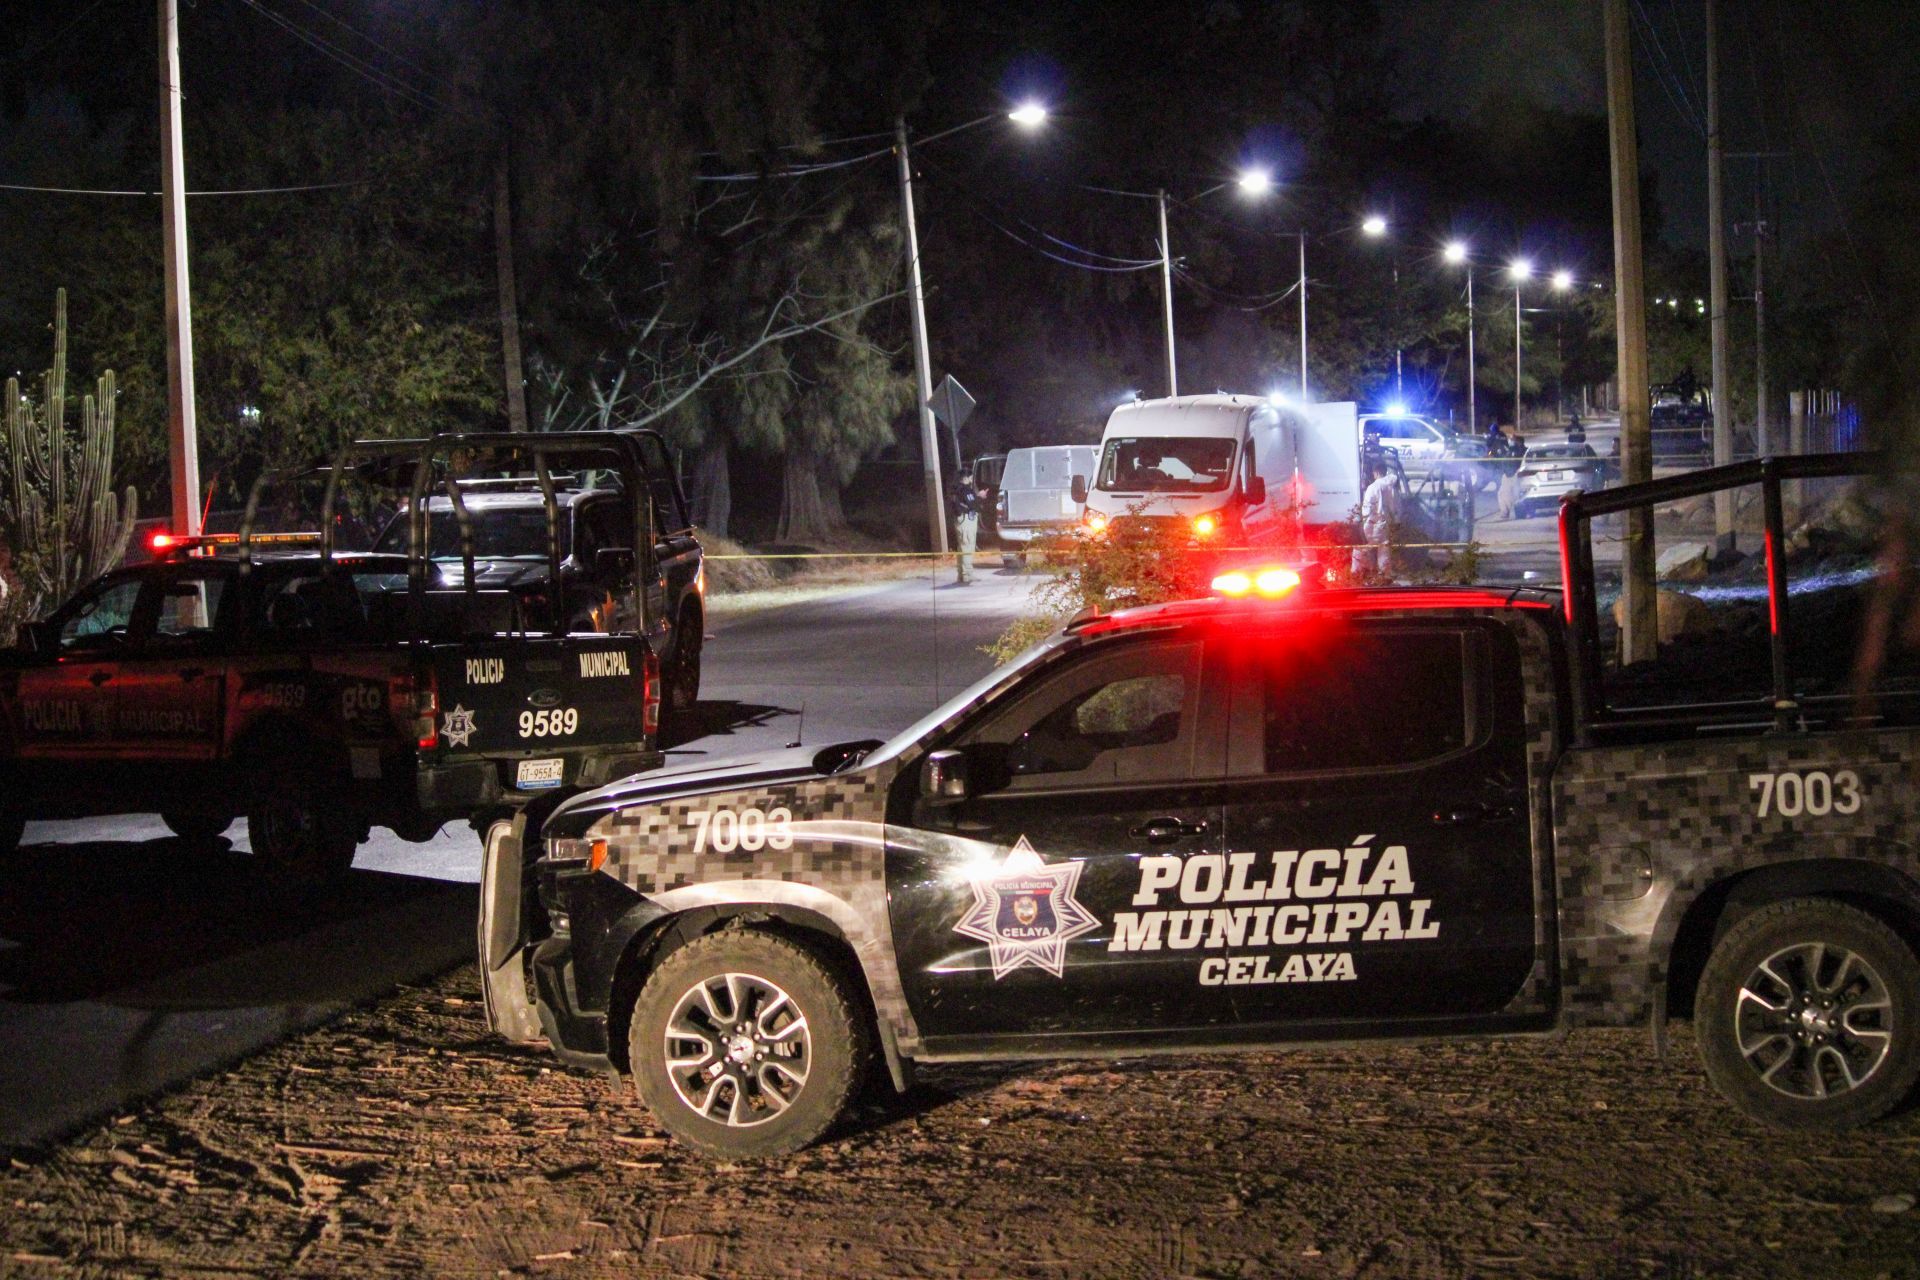 Capturaron a otro sicario por la masacre en Celaya, Guanajuato - Infobae